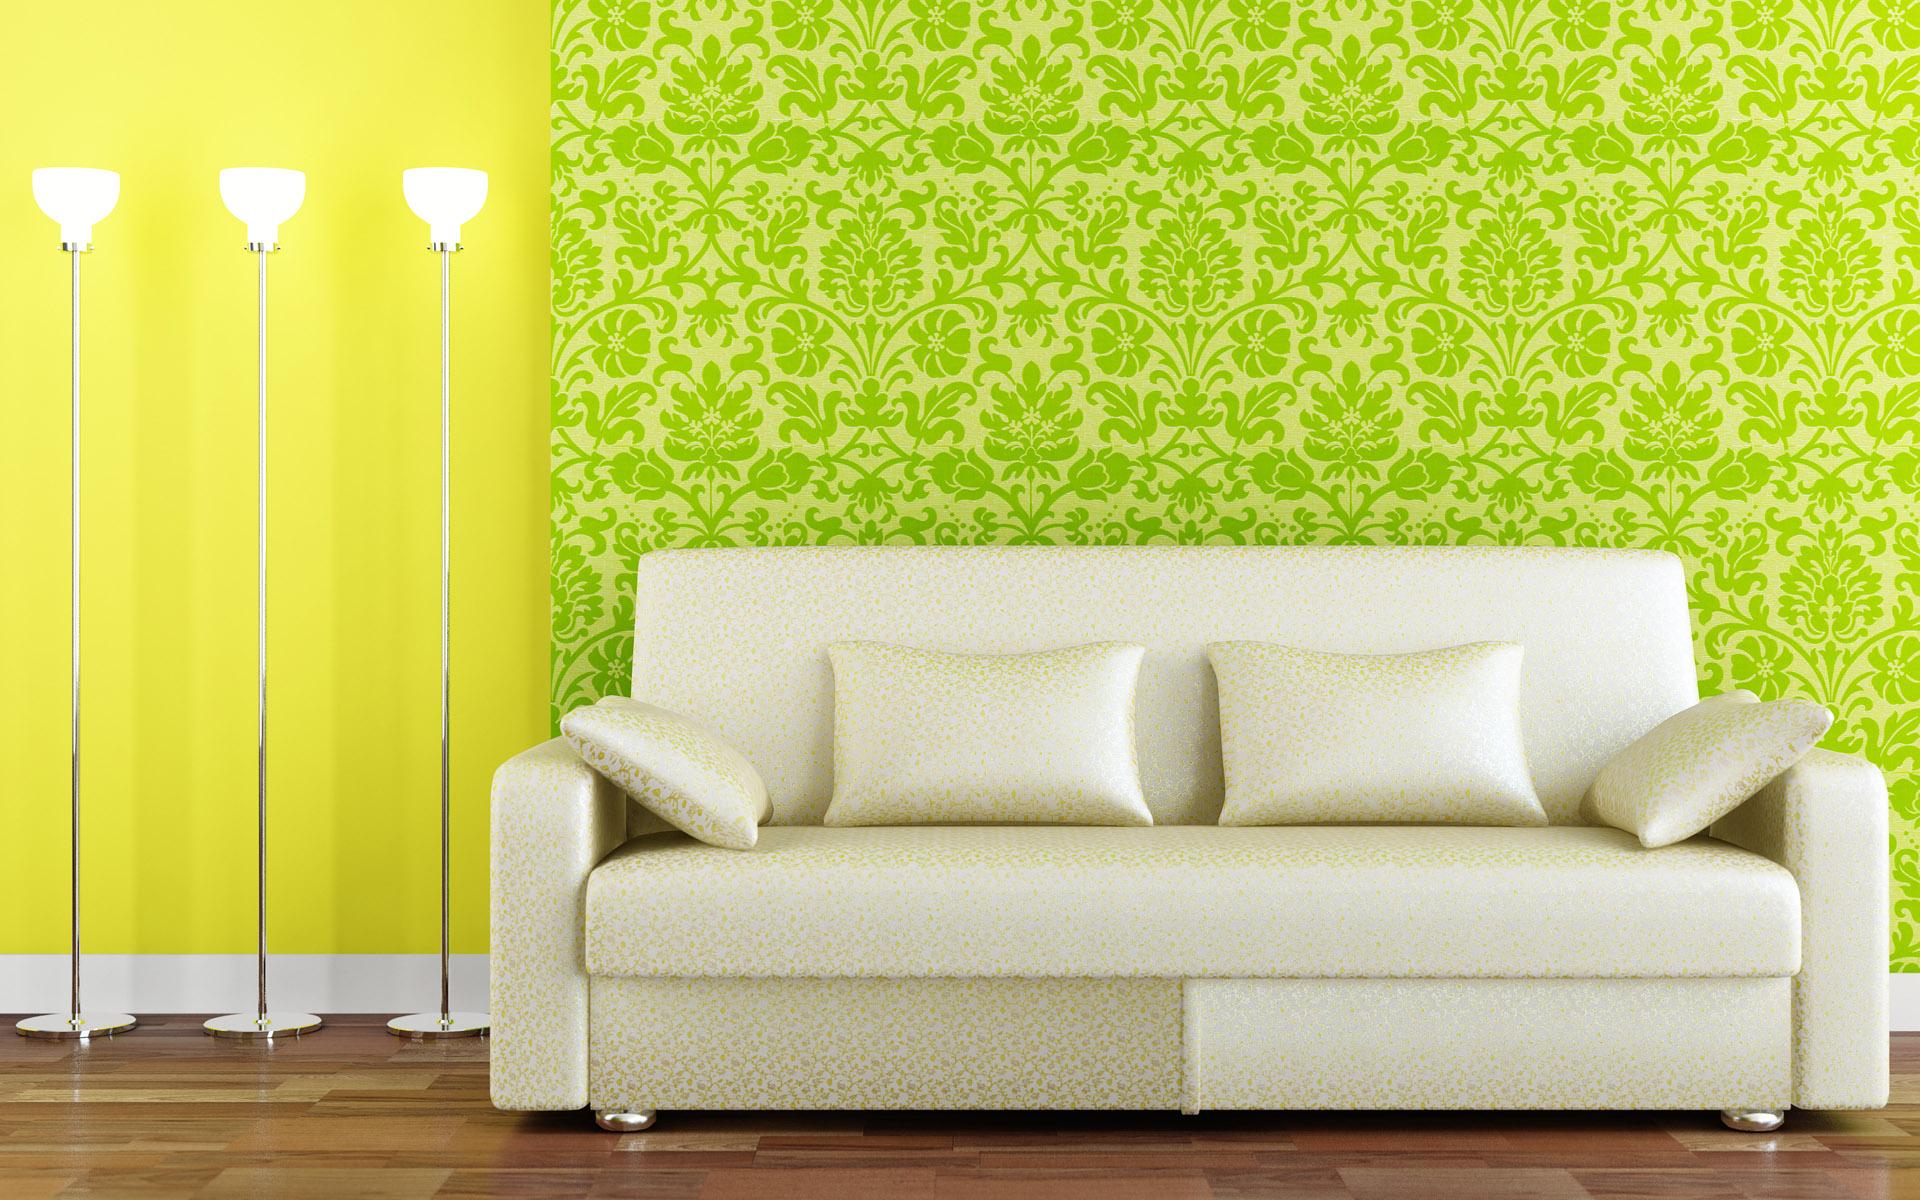 48+] Home Interior Wallpaper Designs - WallpaperSafari